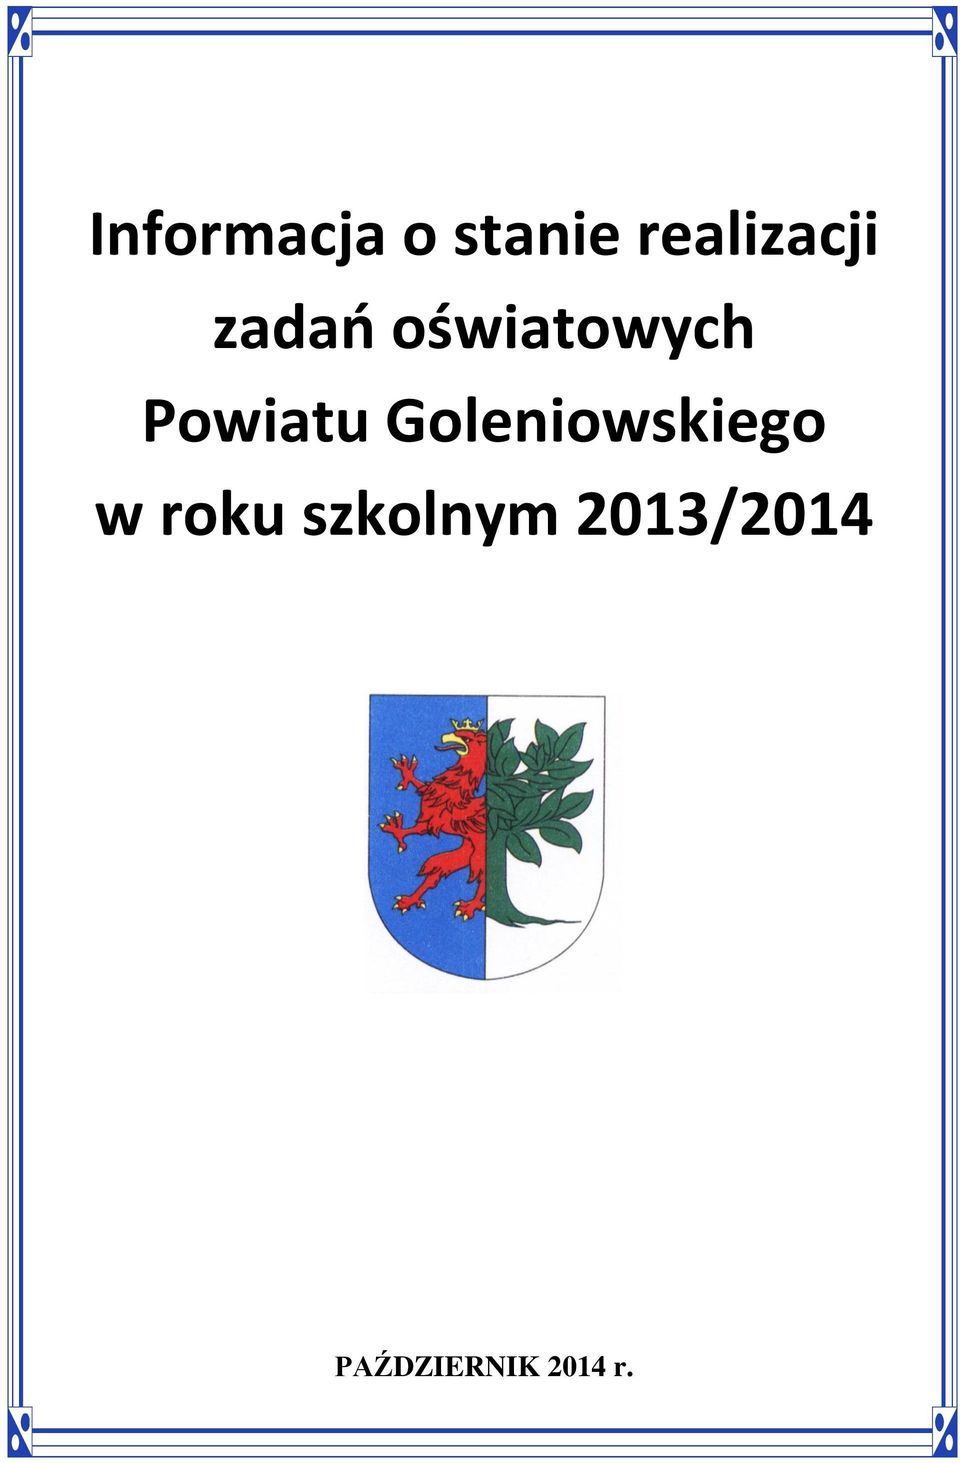 Powiatu Goleniowskiego w roku